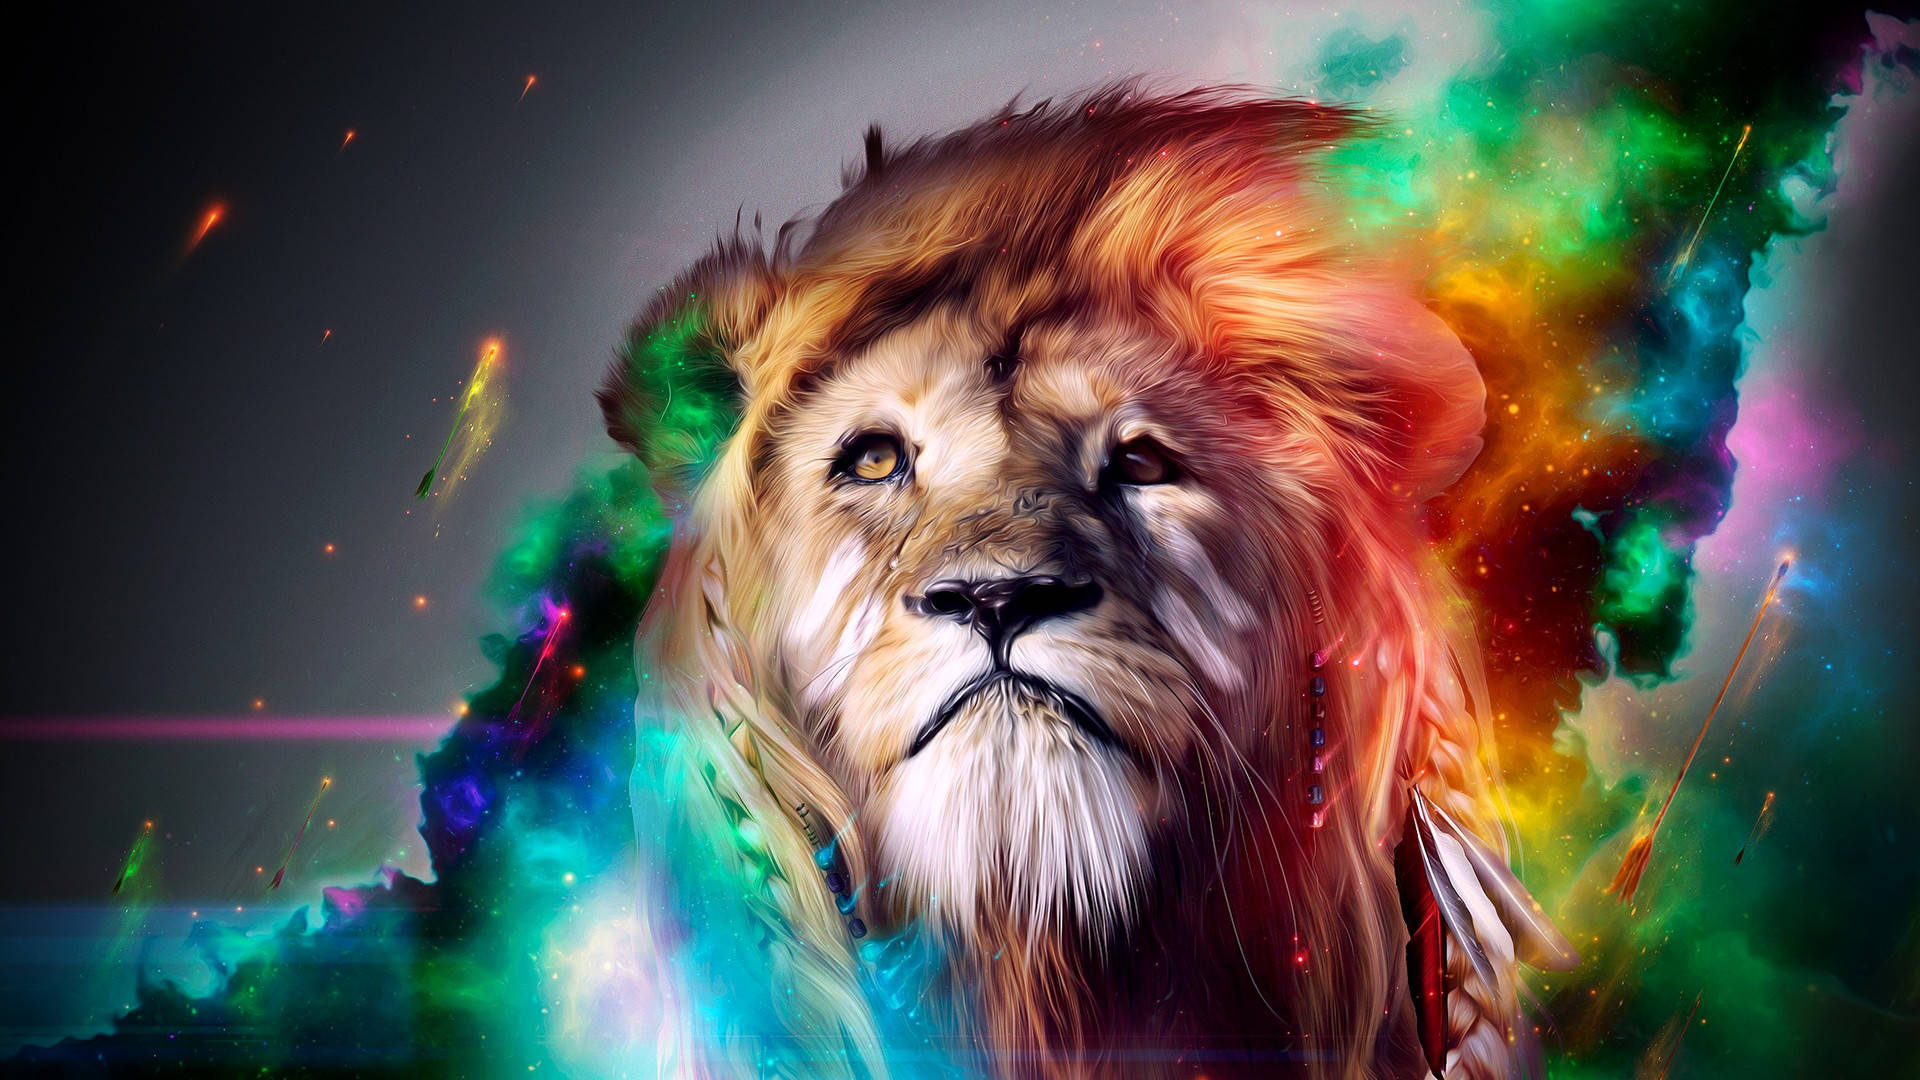 Cool Lion Art 1080p Hd Desktop Sfondo